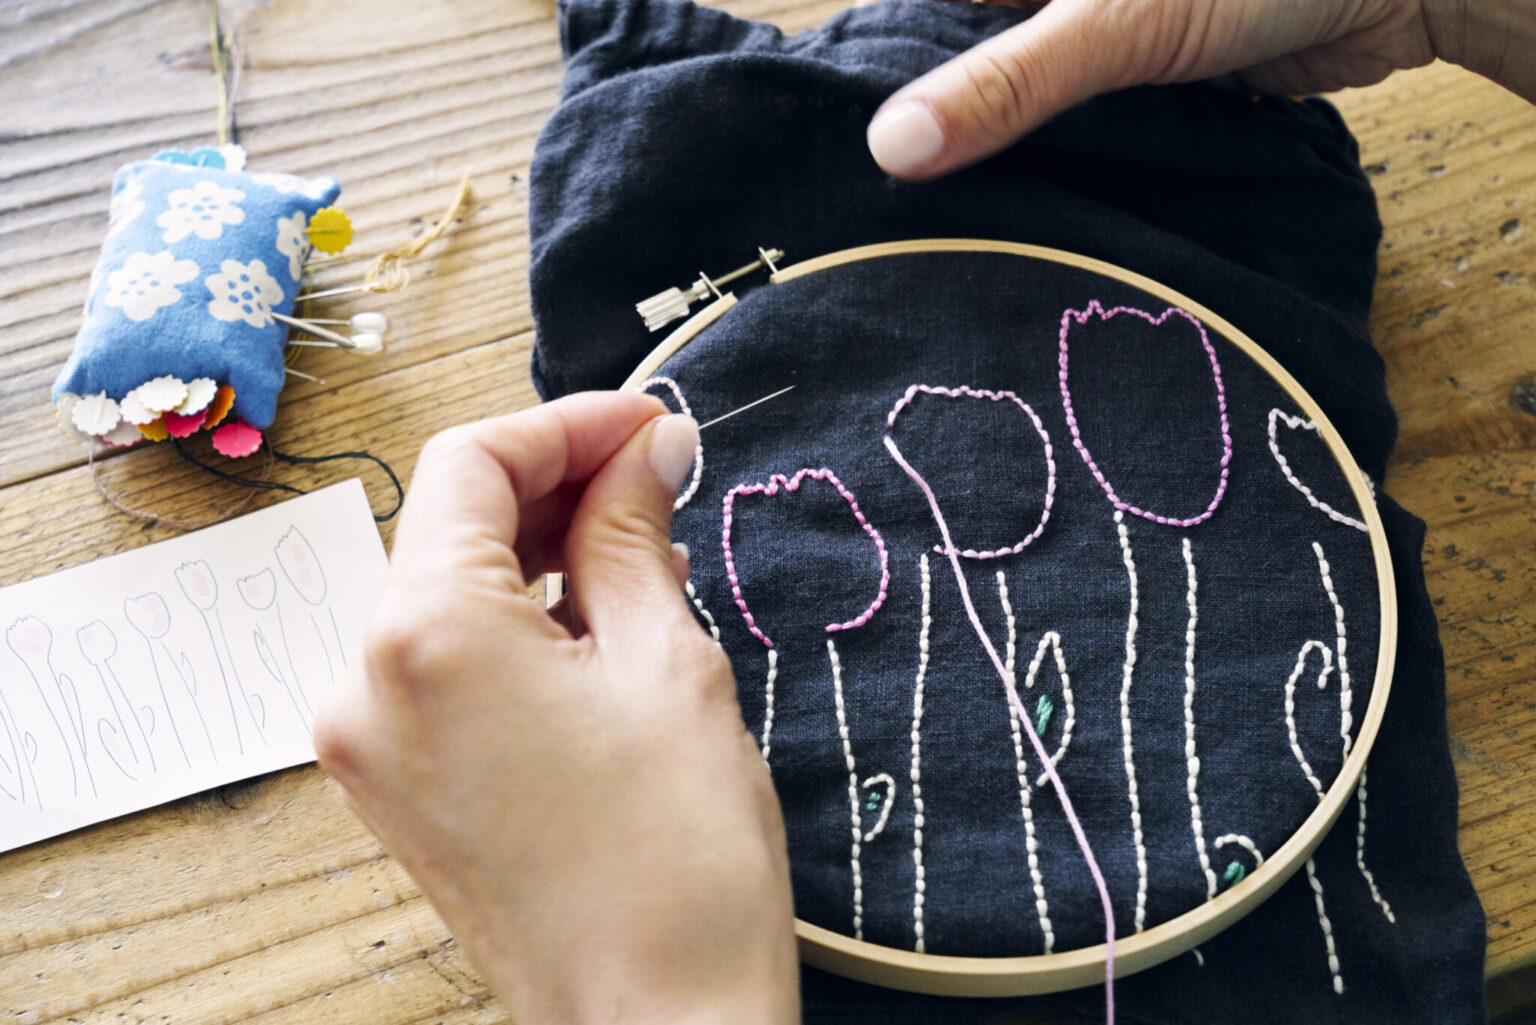 現在製作中の巾着への刺しゅうは、以前名刺に入れていた自作イラストを図案にしている。